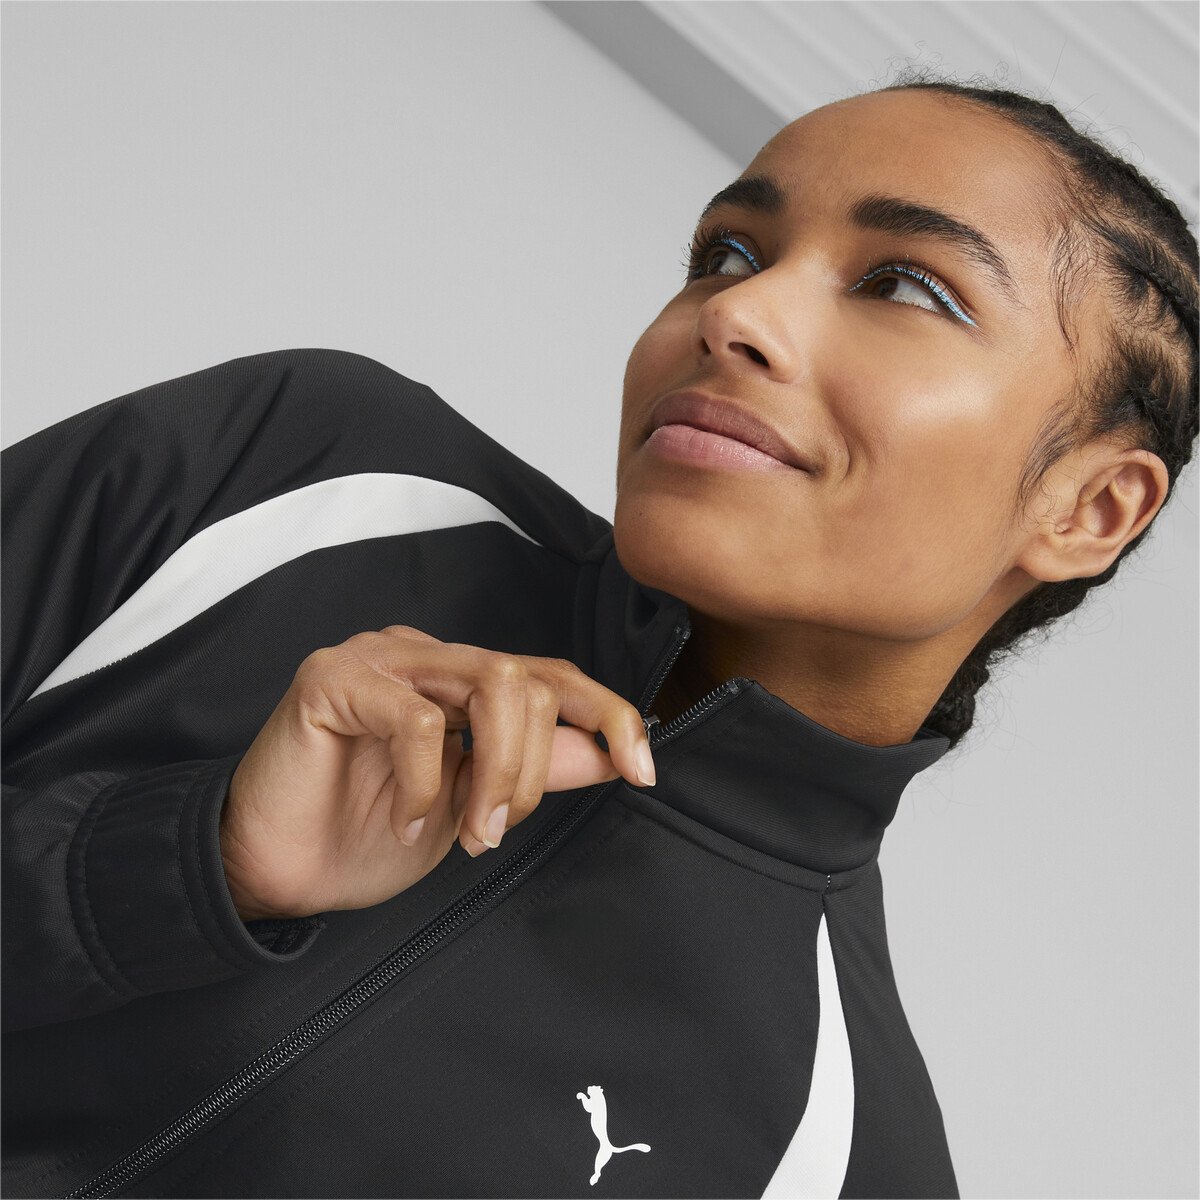 Conjunto casual Nike Sportswear de mujer